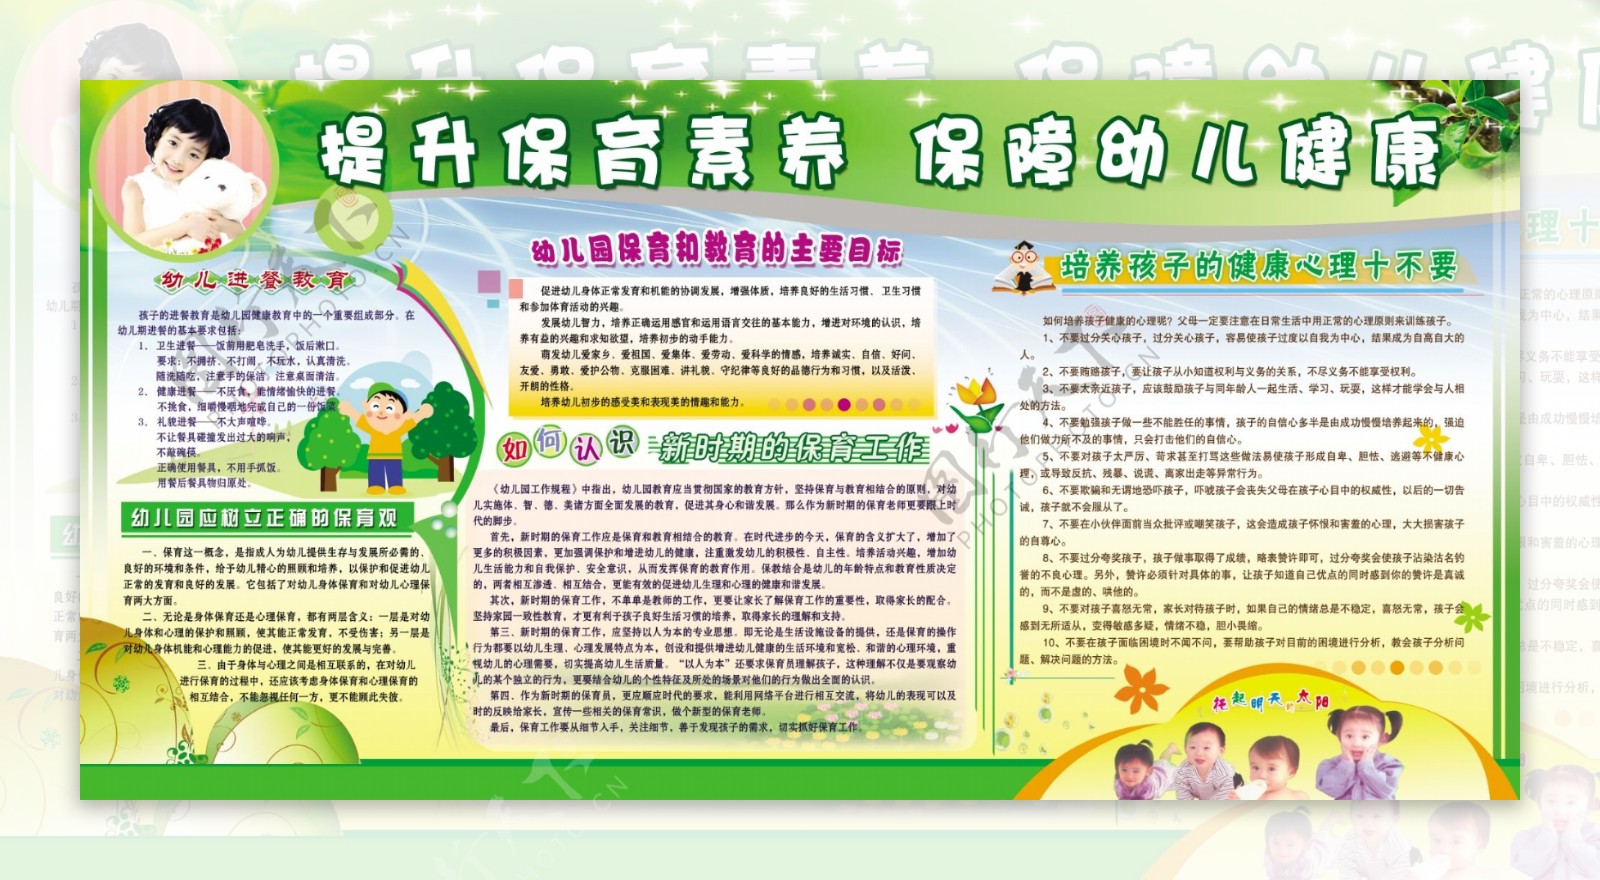 幼儿发展与健康管理-专业介绍-广州珠江职业技术学院 - 教育学院